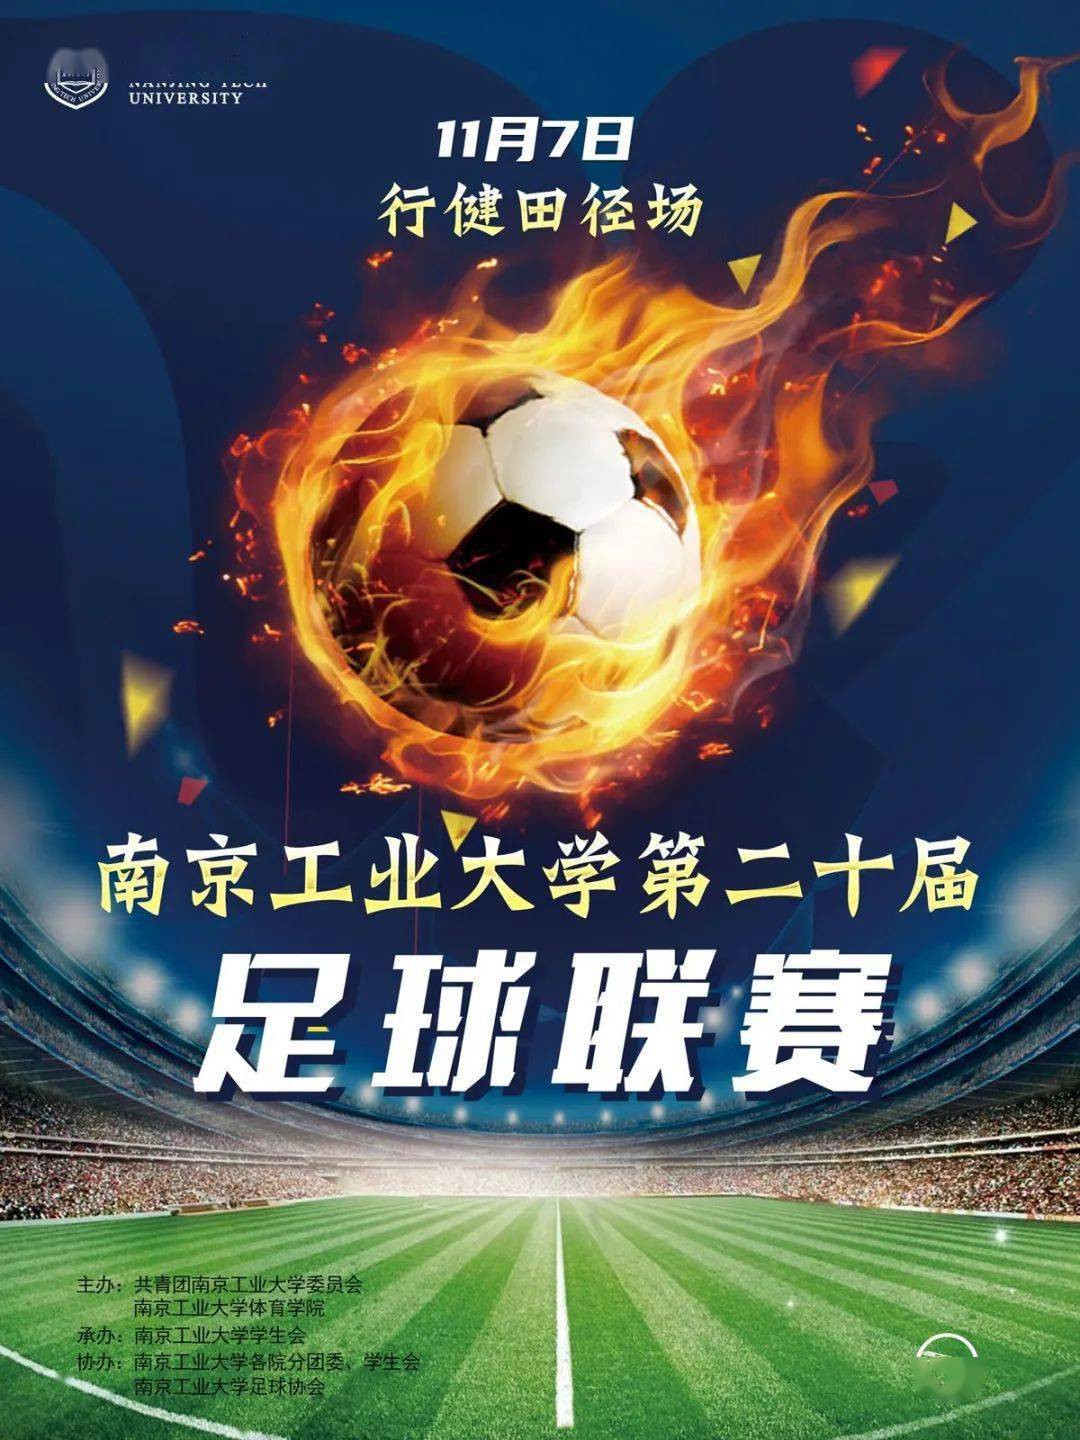 
【足球联赛】南京工业大学第二十届足球联赛就要开始啦！：亚新体育app官网(图1)